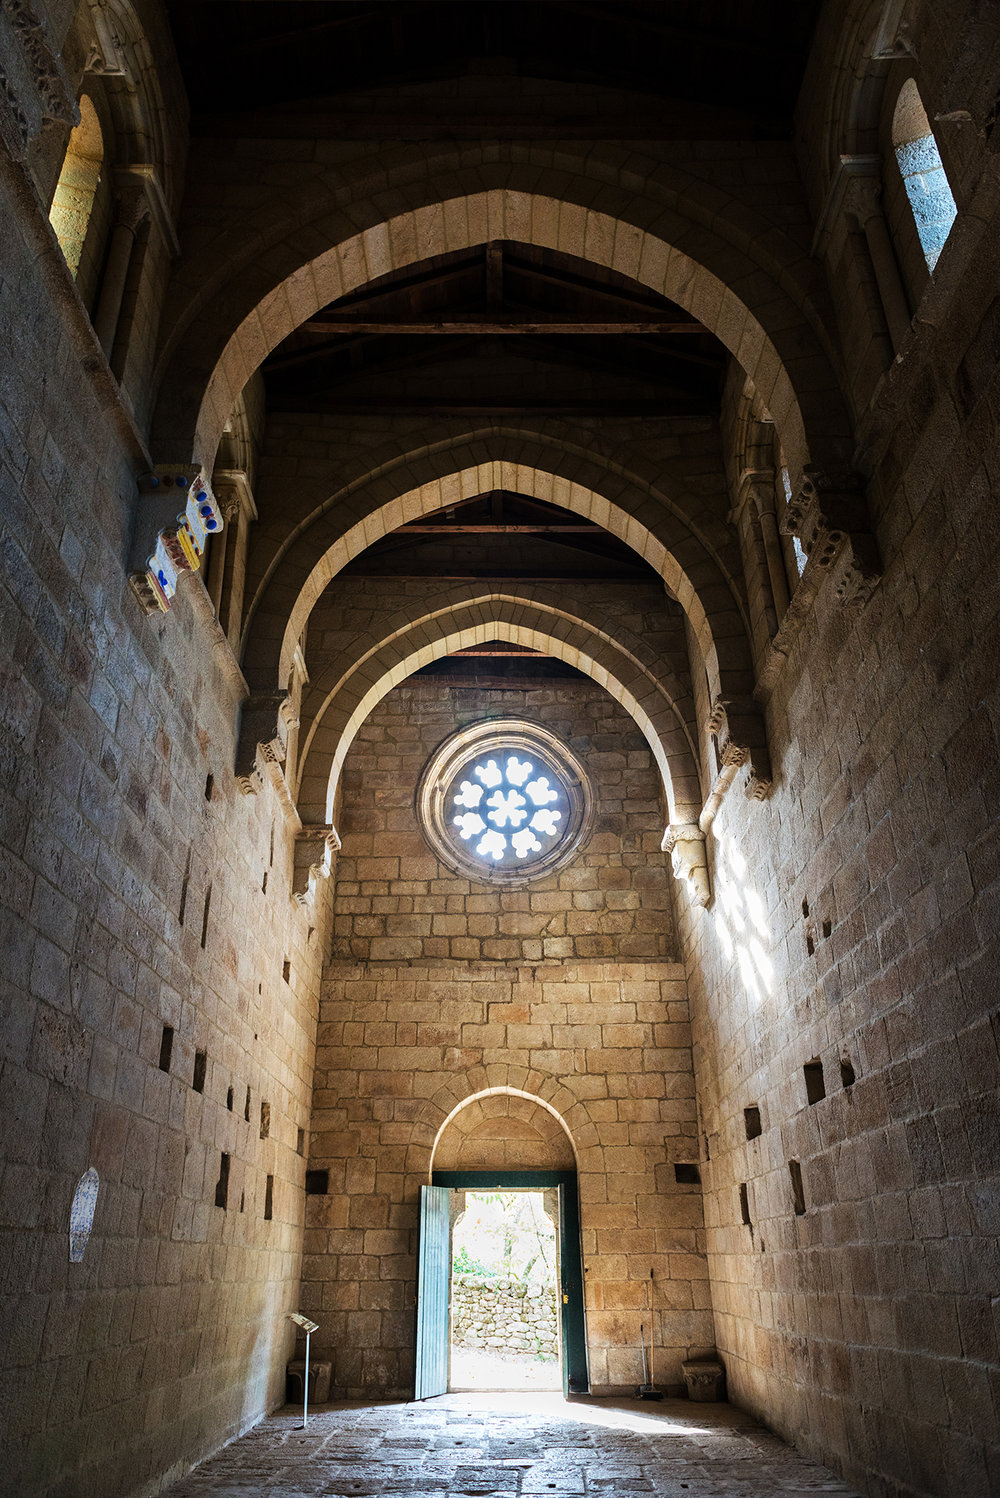 Inside view of the Romanesque Monastery of Santa Cristina de Ribas de Sil